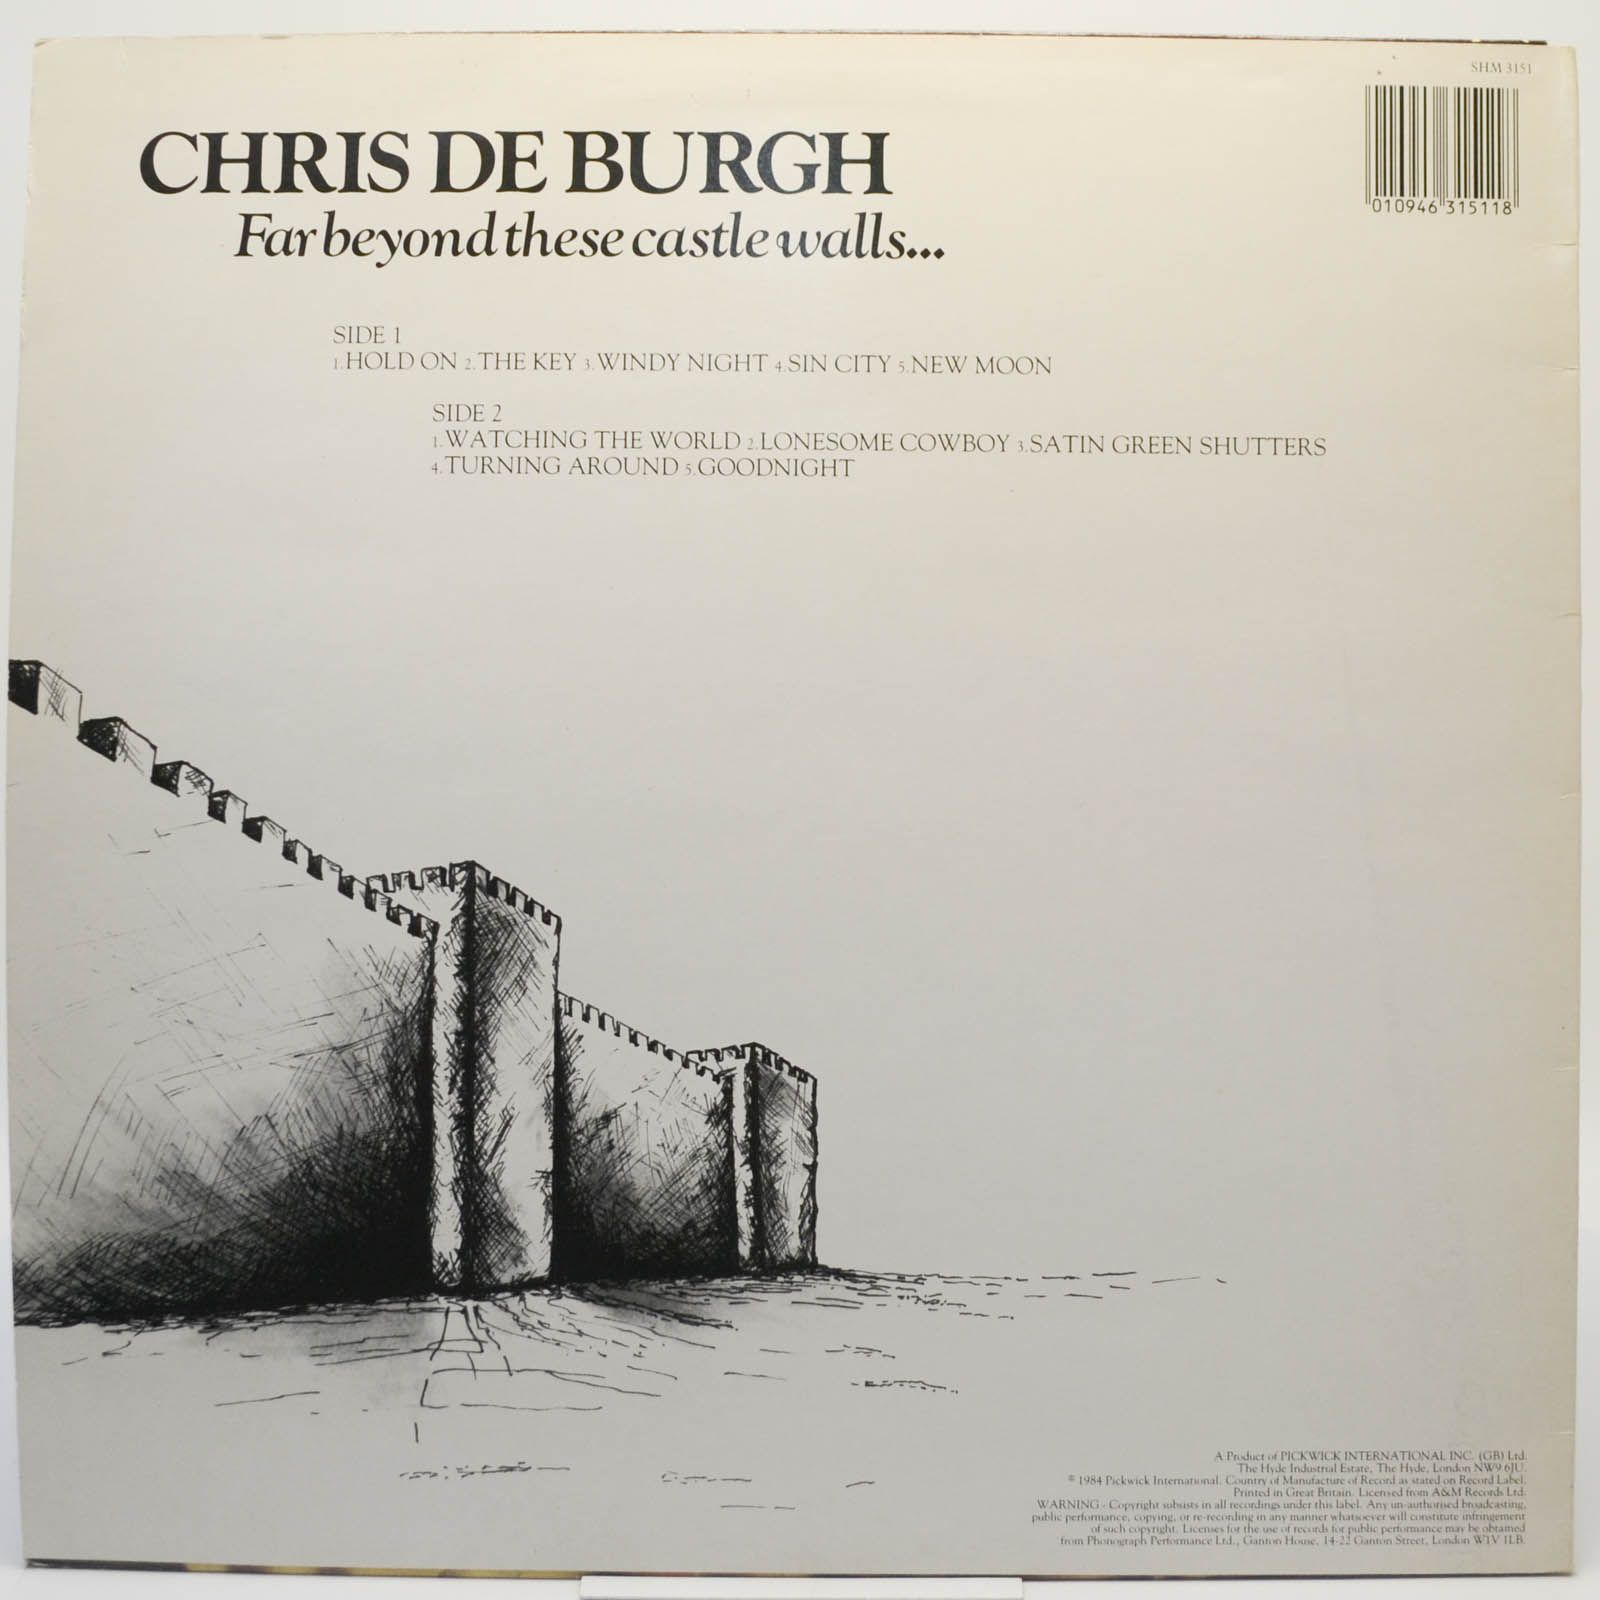 Chris de Burgh — Far Beyond These Castle Walls (UK), 1974